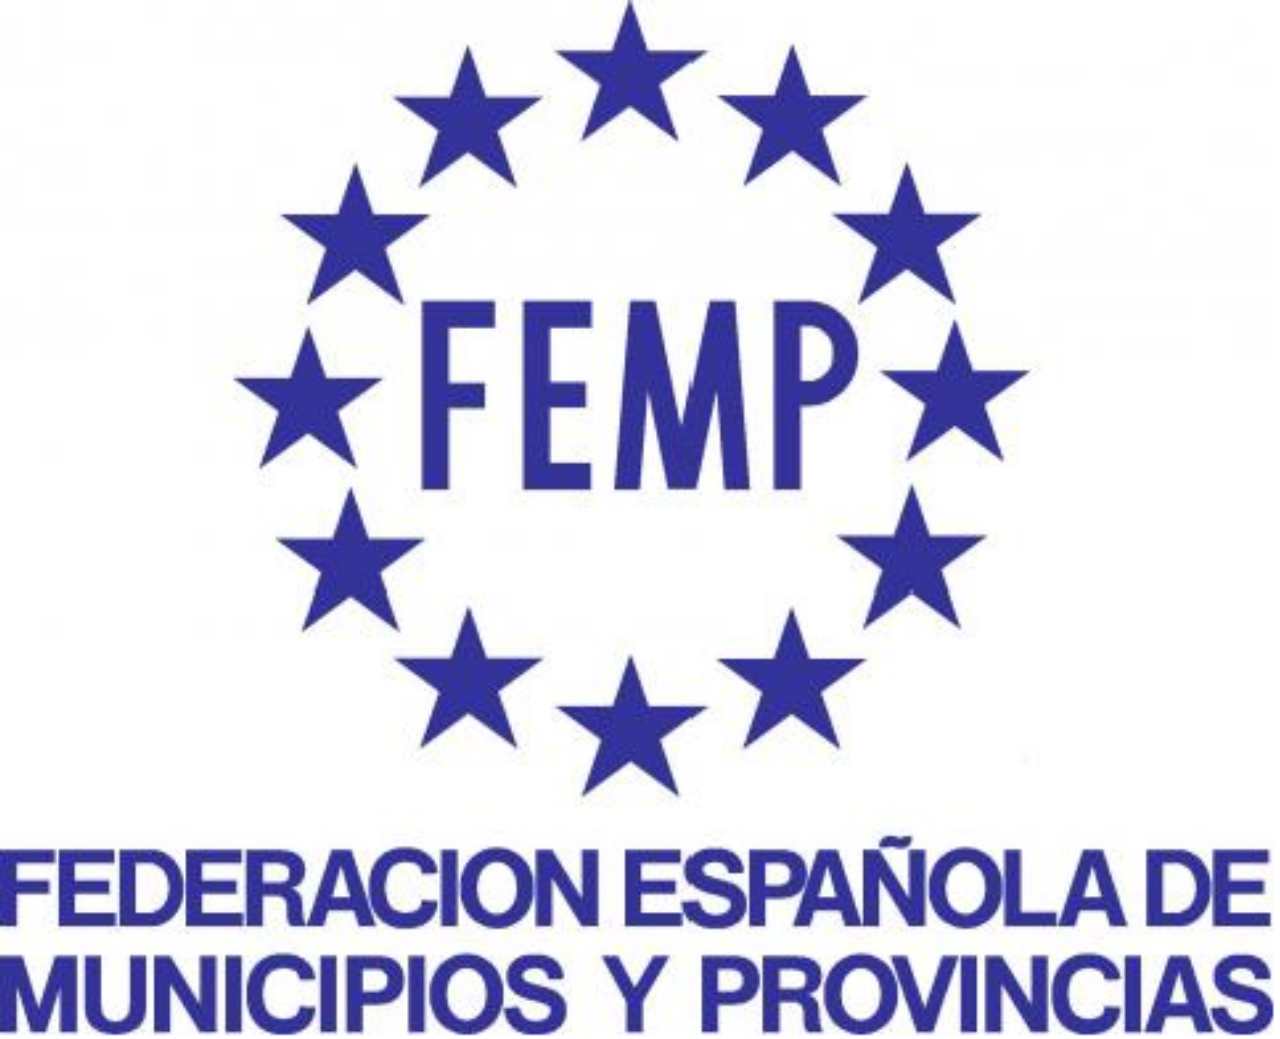 Federacion española de municipios y provincias